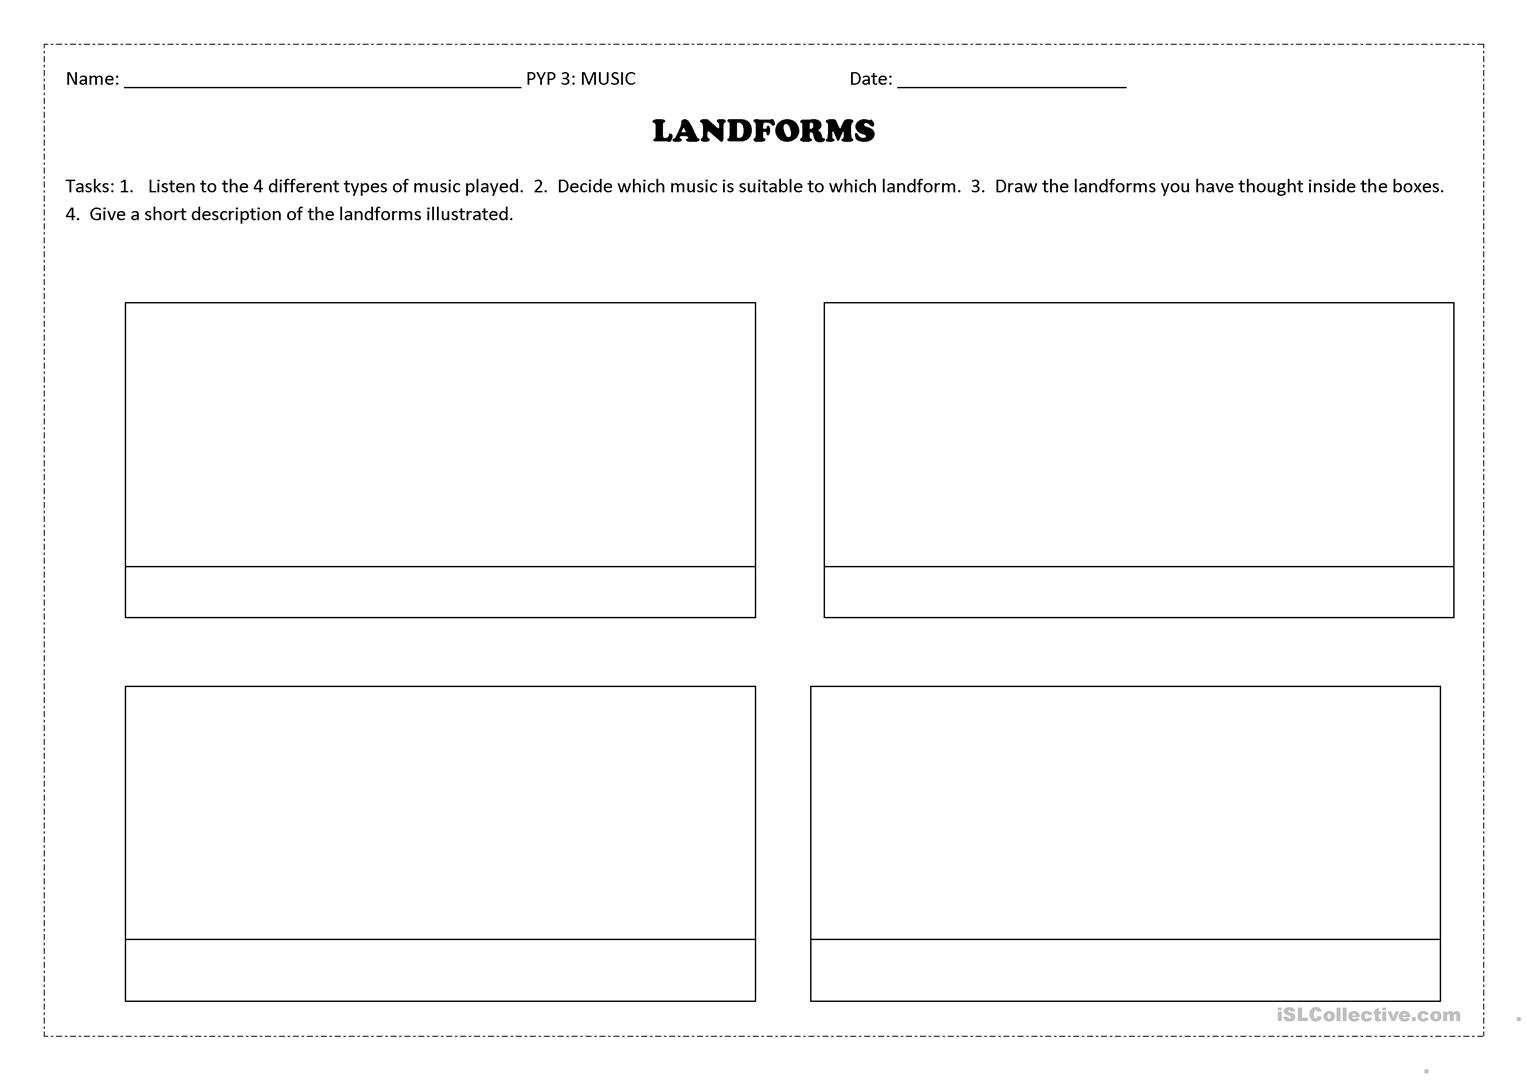 Landforms Worksheet  Free Esl Printable Worksheets Madeteachers Intended For Landform Printable Worksheets